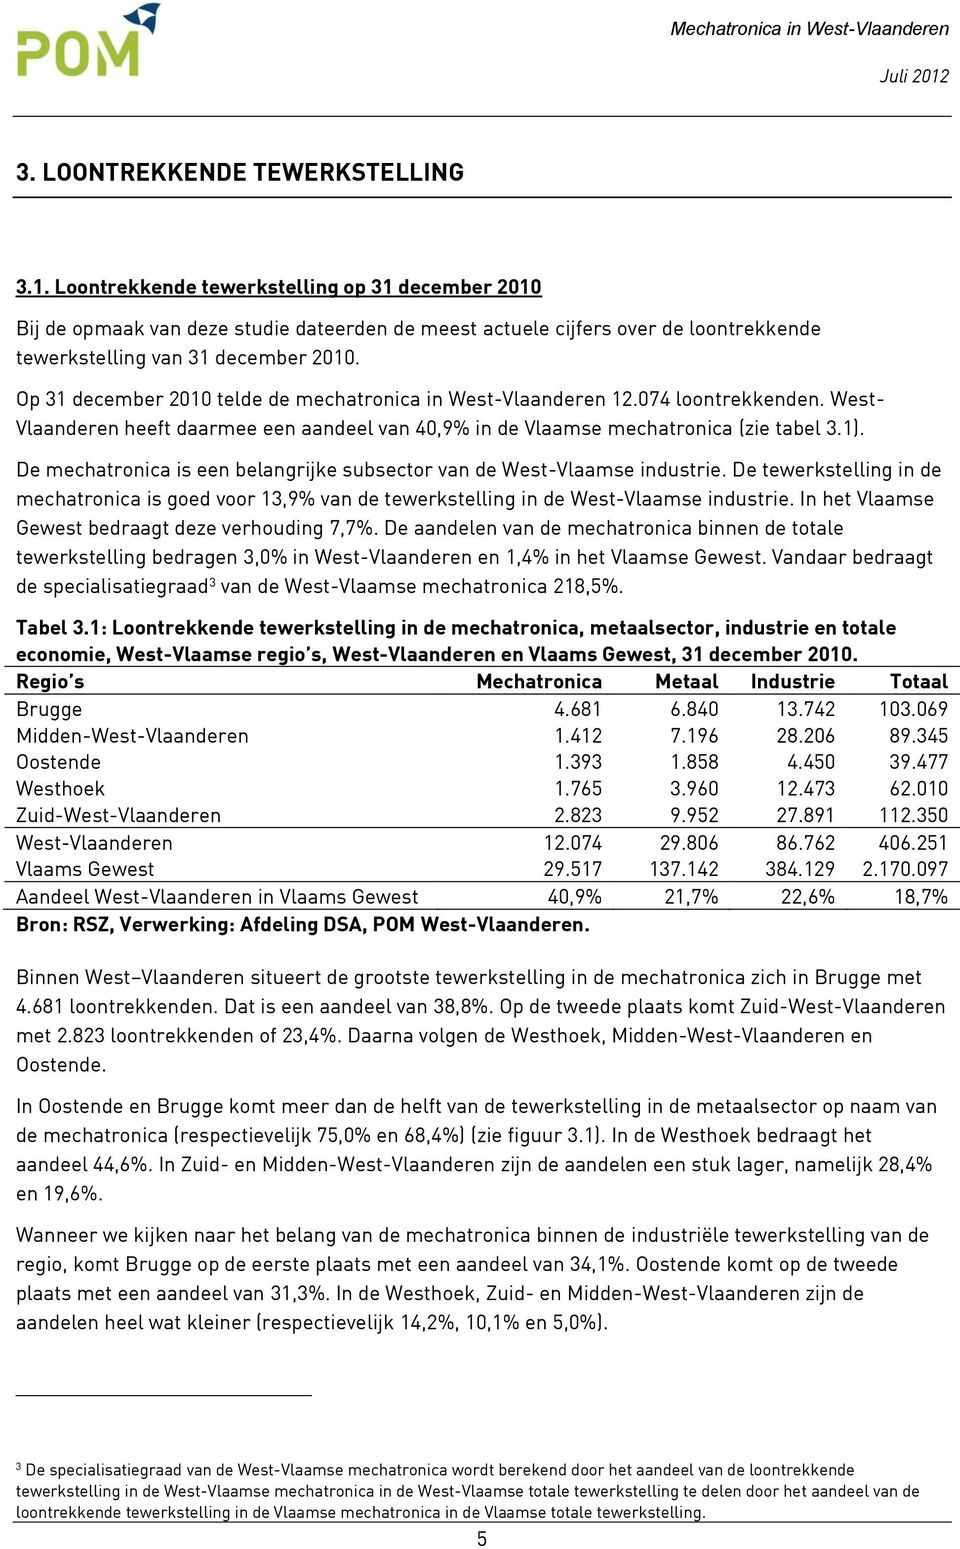 Op 31 december 2010 telde de mechatronica in West-Vlaanderen 12.074 loontrekkenden. West- Vlaanderen heeft daarmee een aandeel van 40,9% in de Vlaamse mechatronica (zie tabel 3.1).